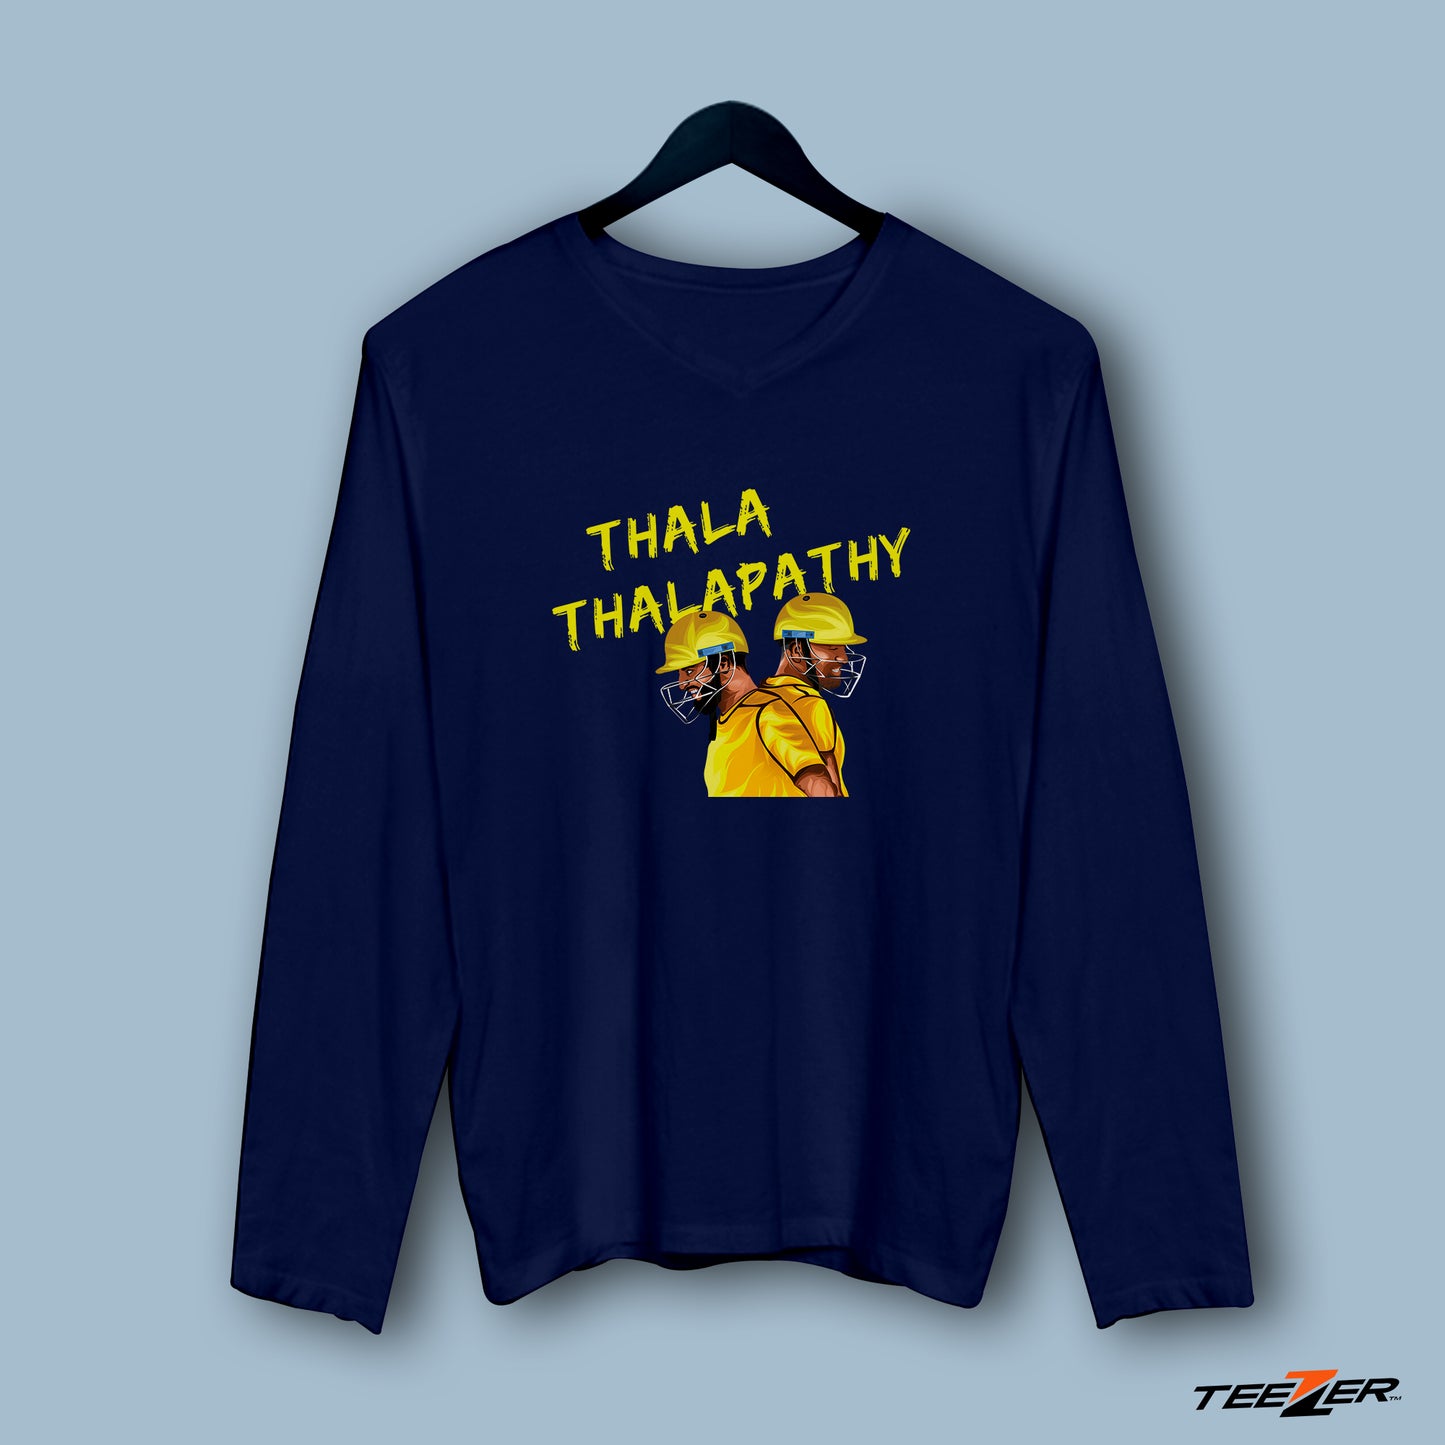 Thala thalapathy-(F/S)